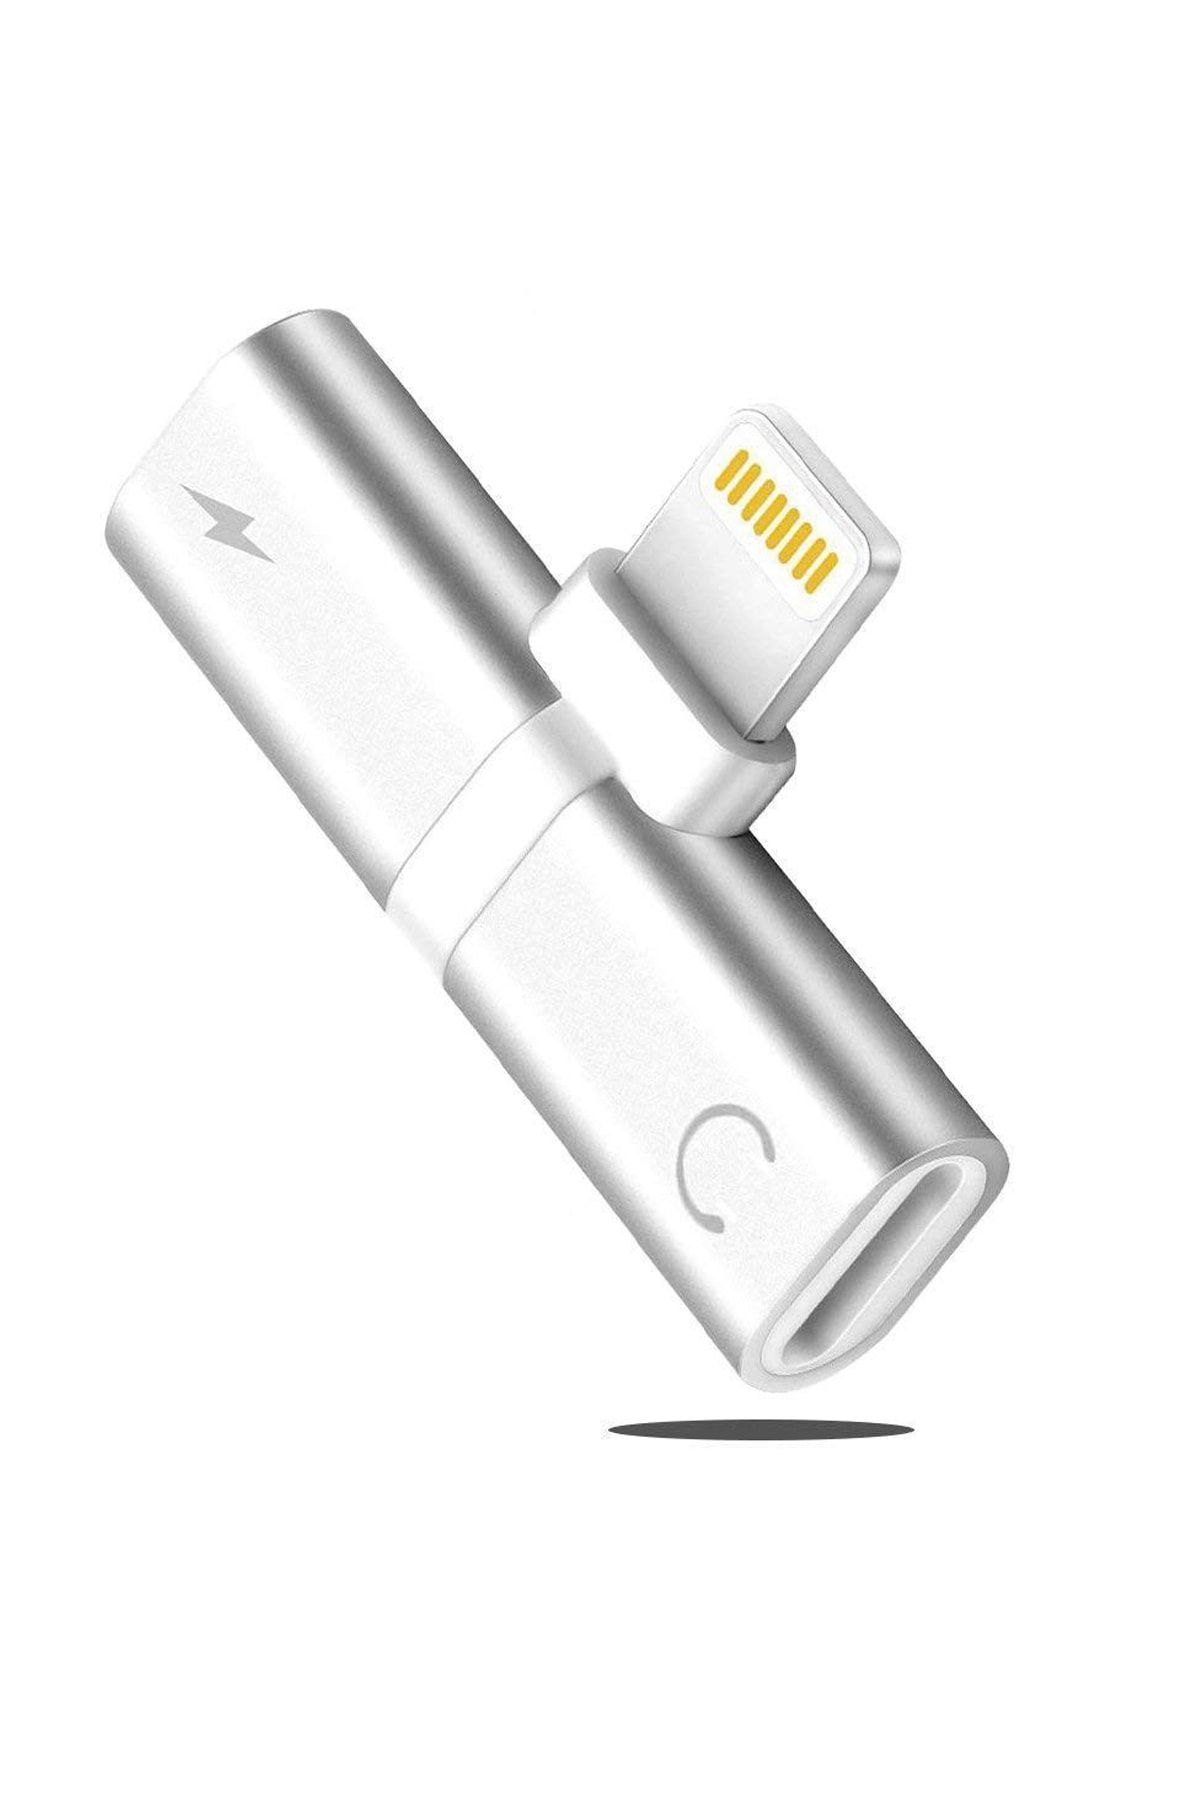 Microcase Iphone Lightning Splitter 2in1 Uyumlu  Şarj Ve Kulaklık Çevirici Gümüş - Ikd101